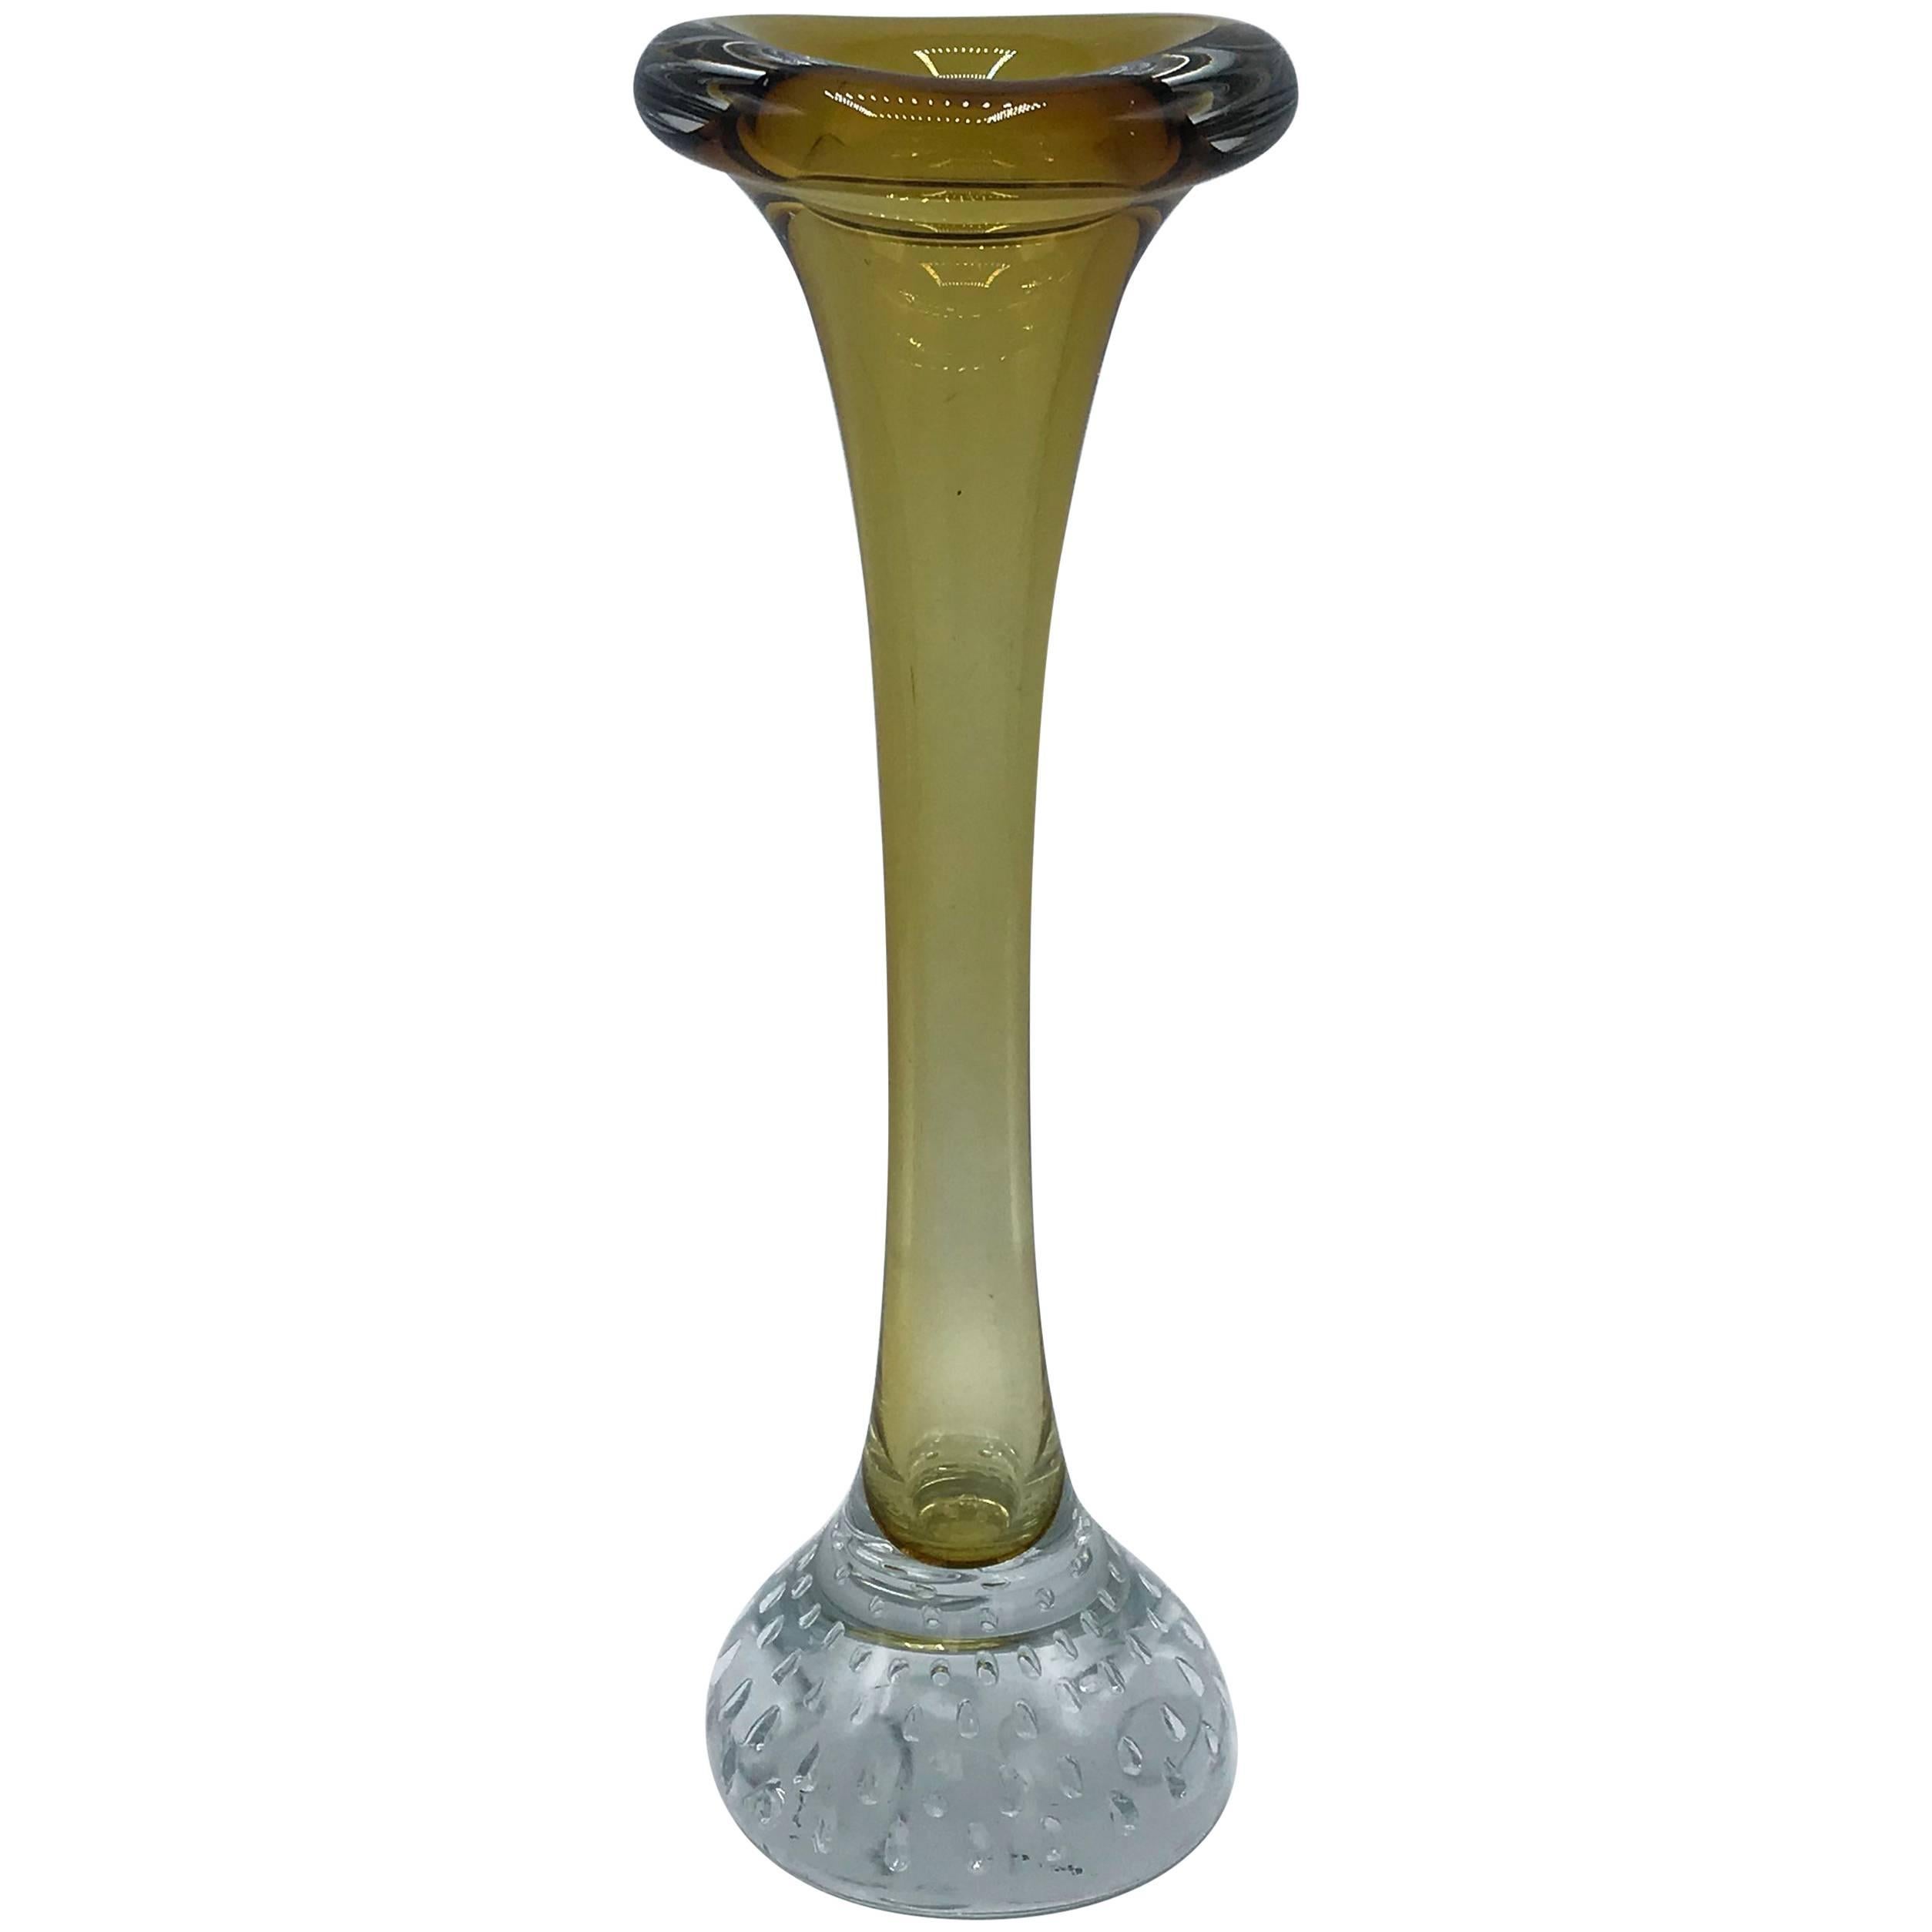 1960s Yellow Italian Murano Glass Bud Vase